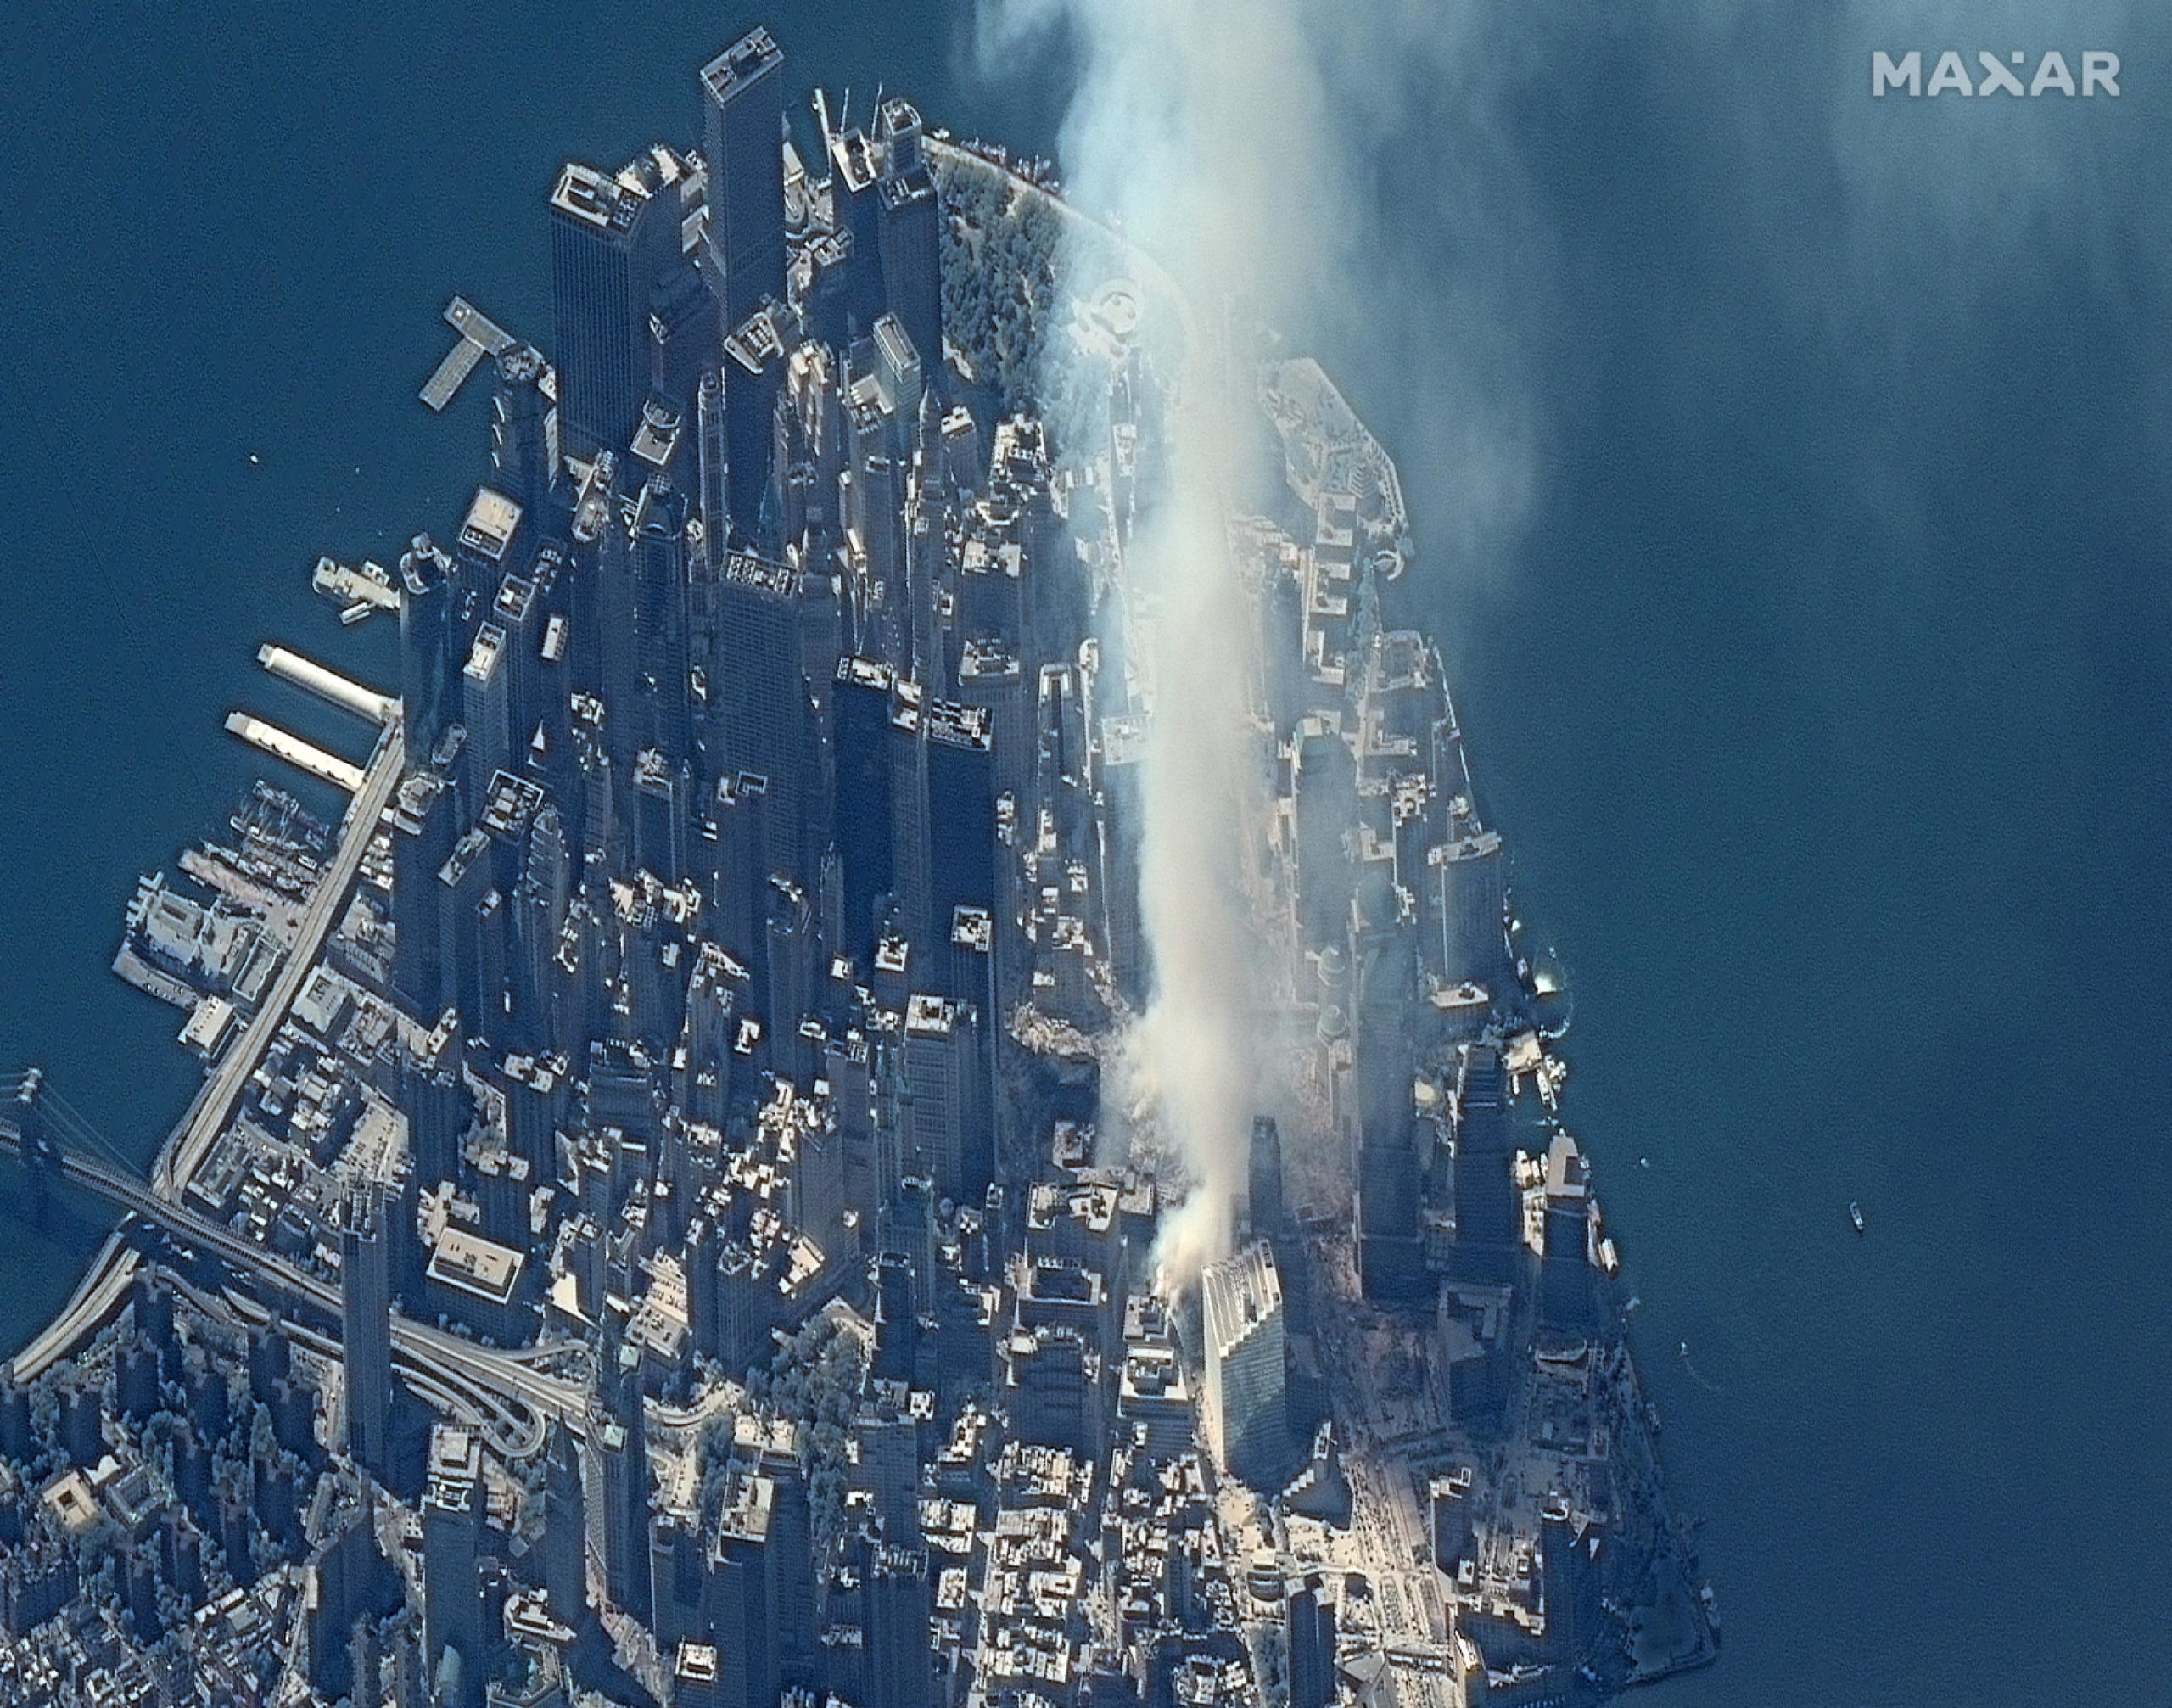 Il fumo che si alza sopra Ground Zero, nel sito del World Trade Center.